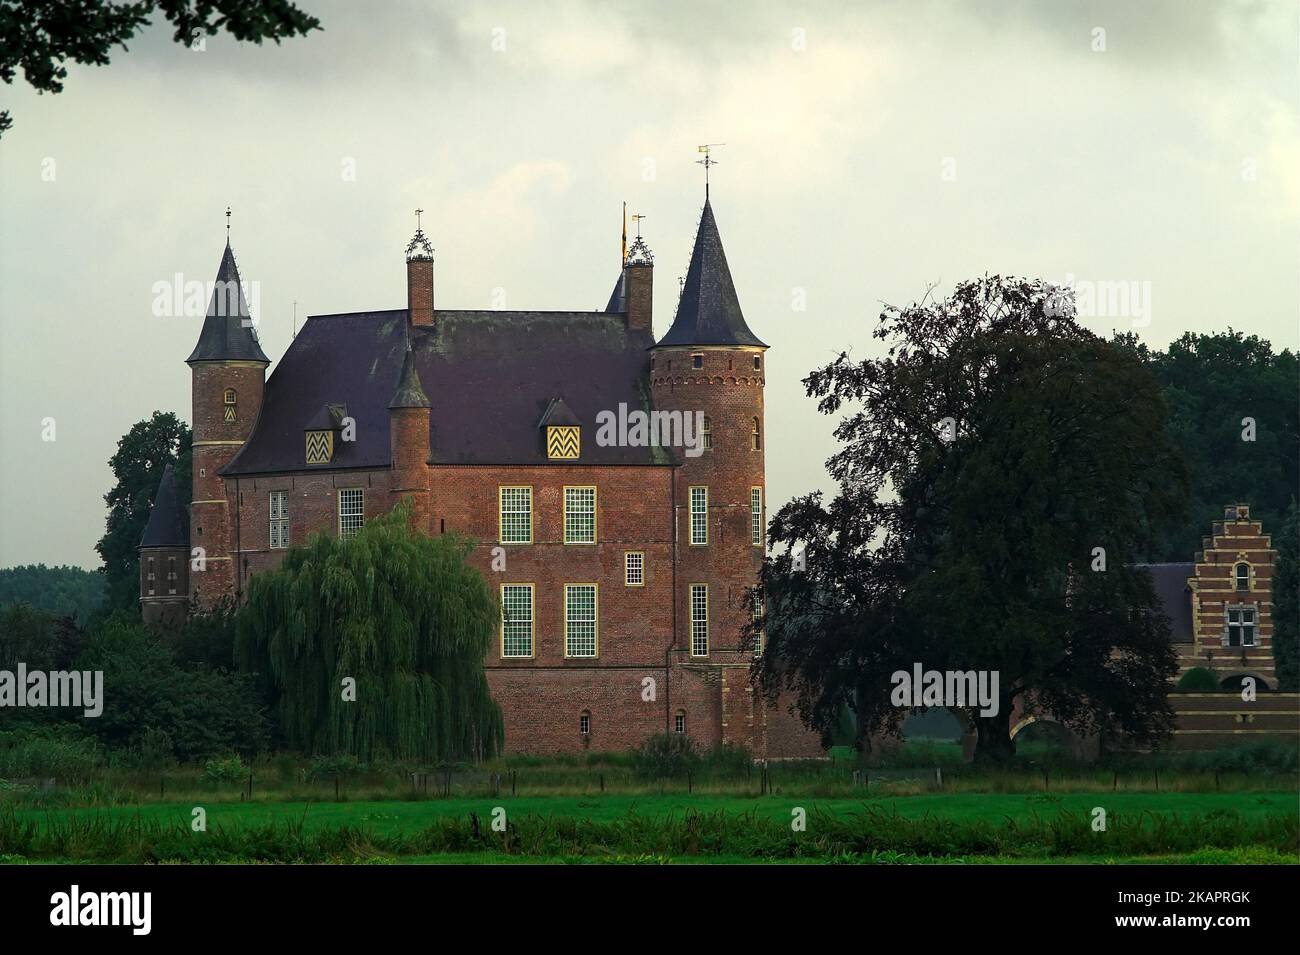 Heeswijk, Netherlands, Niederlande, Heeswijk Castle; Brick medieval castle on the water; Mittelalterliches Backsteinschloss auf dem Wasser; 在水的磚中世紀城堡 Stock Photo